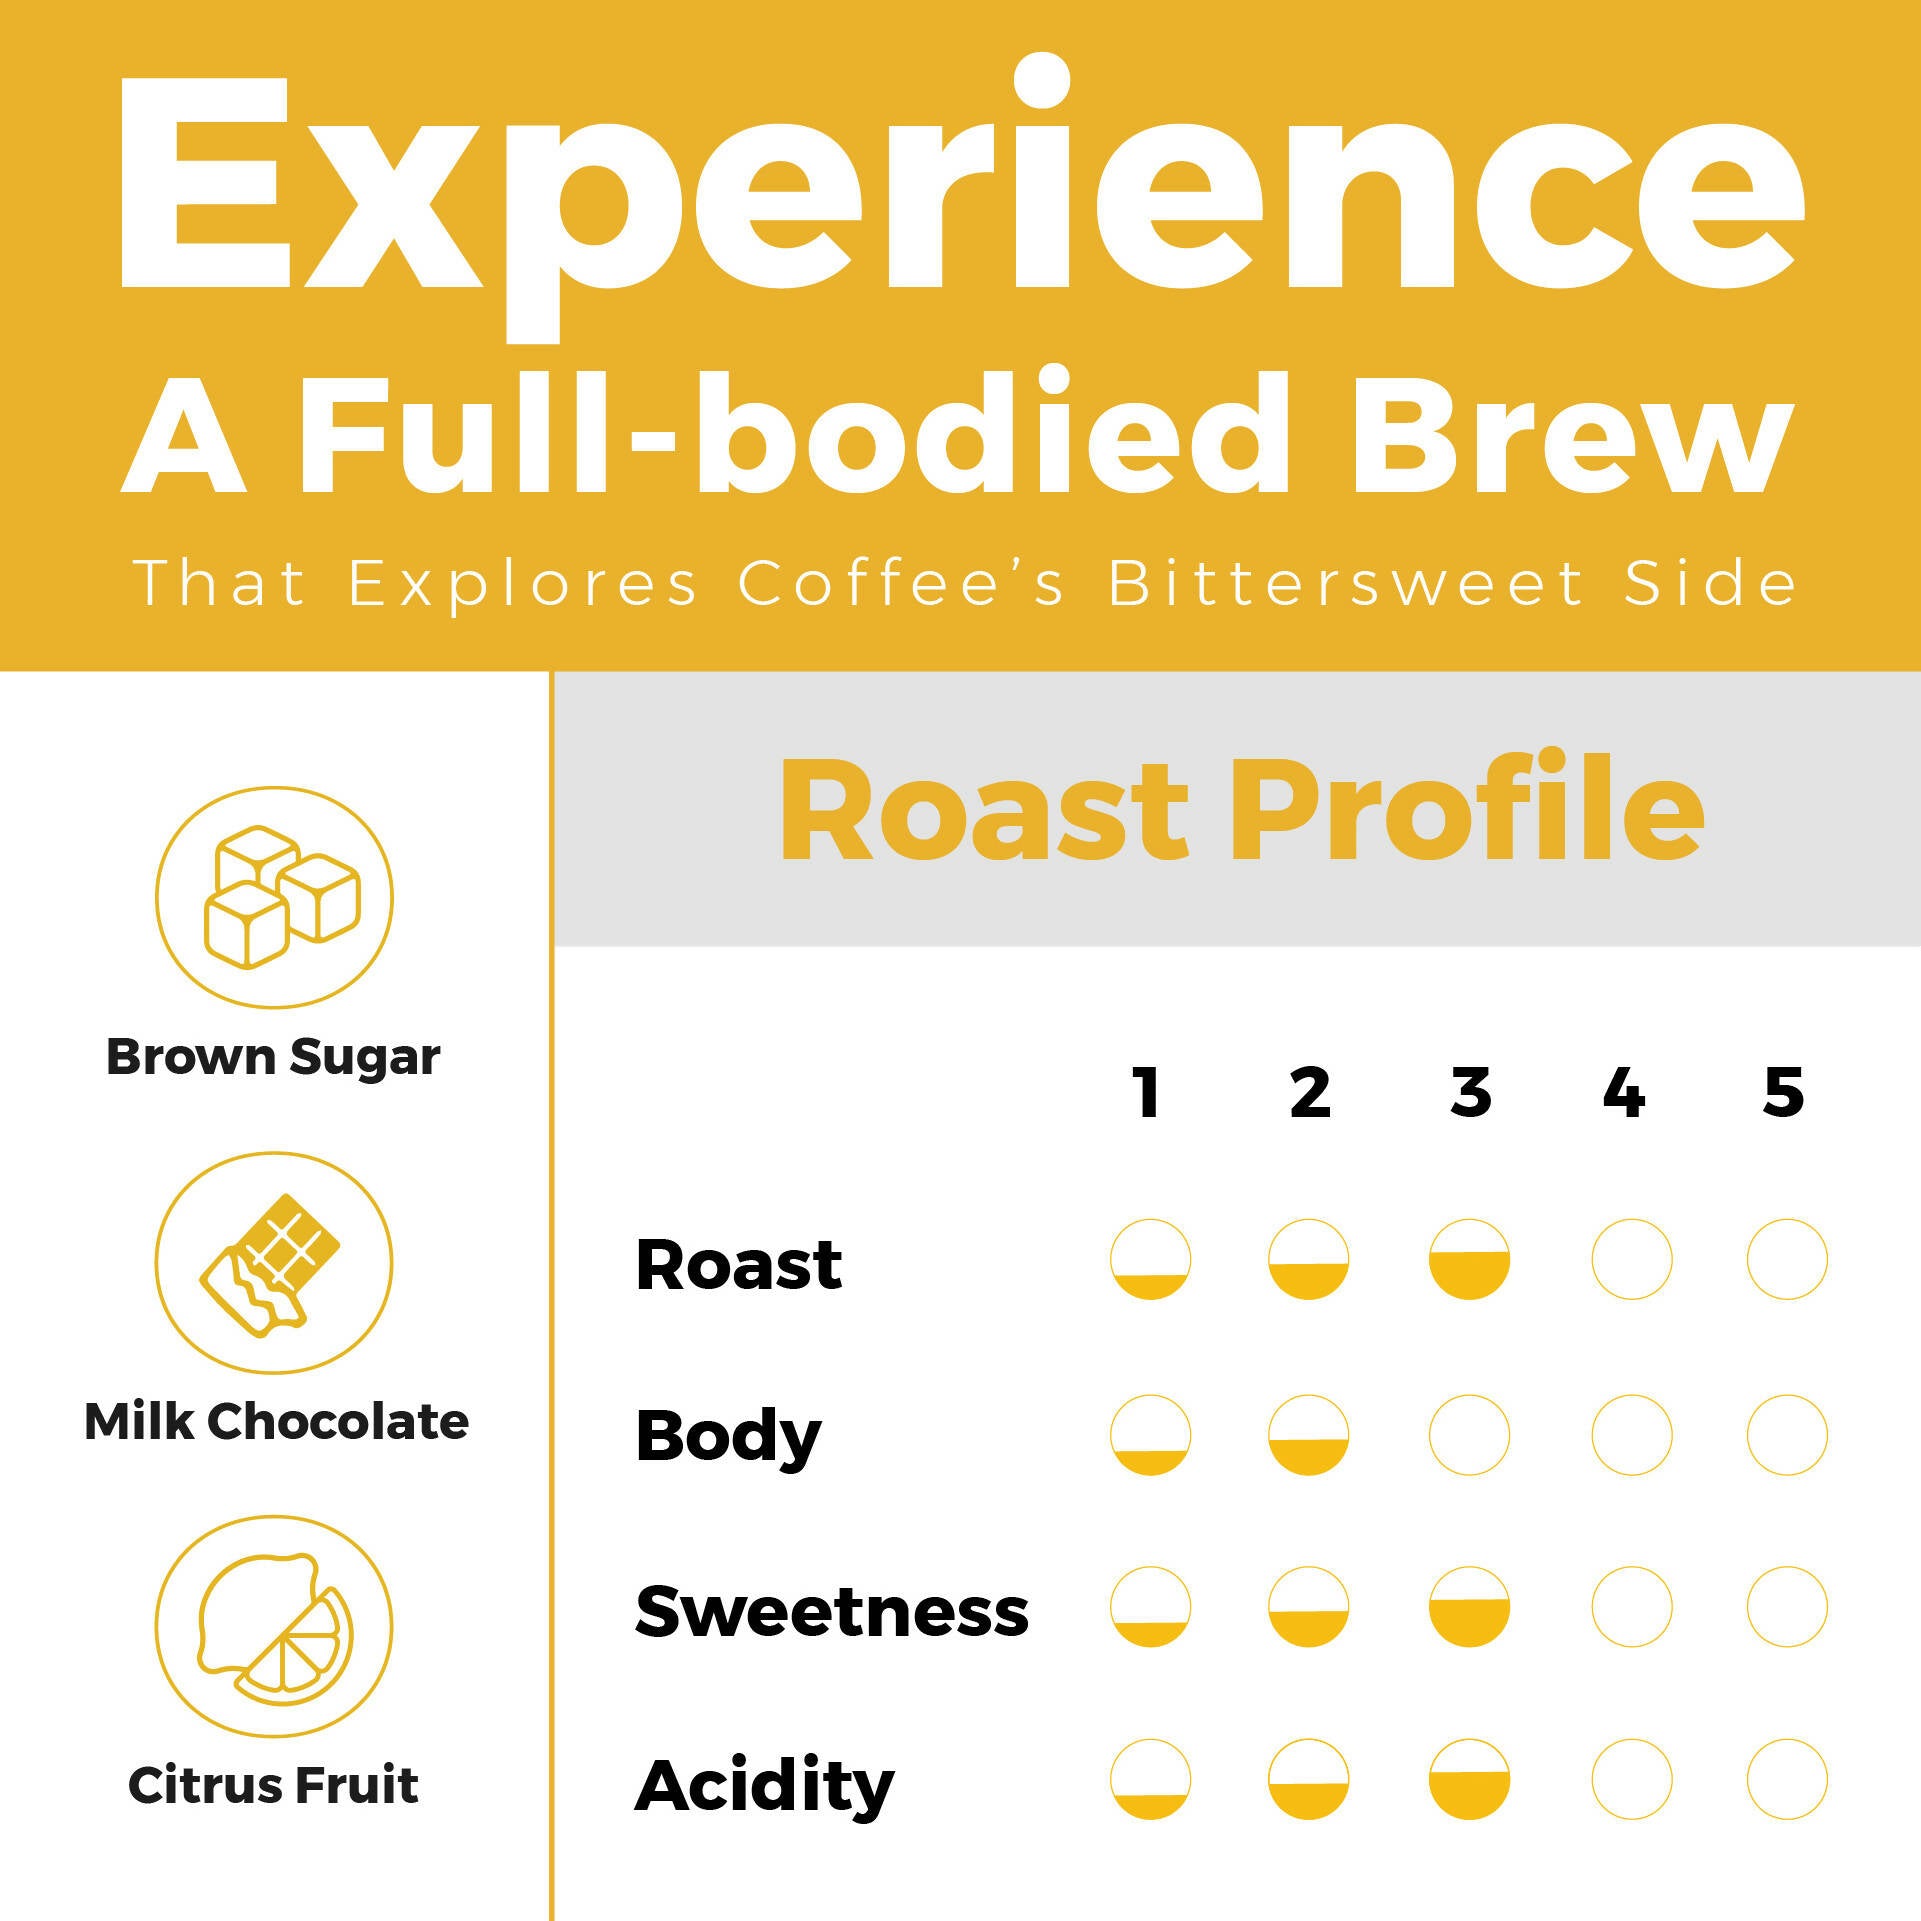 KOONOO Smooth | Medium Roast | 7 x 12g Sachets | Specialty Drip Coffee | Made in UAE - BeanBurds Koonoo